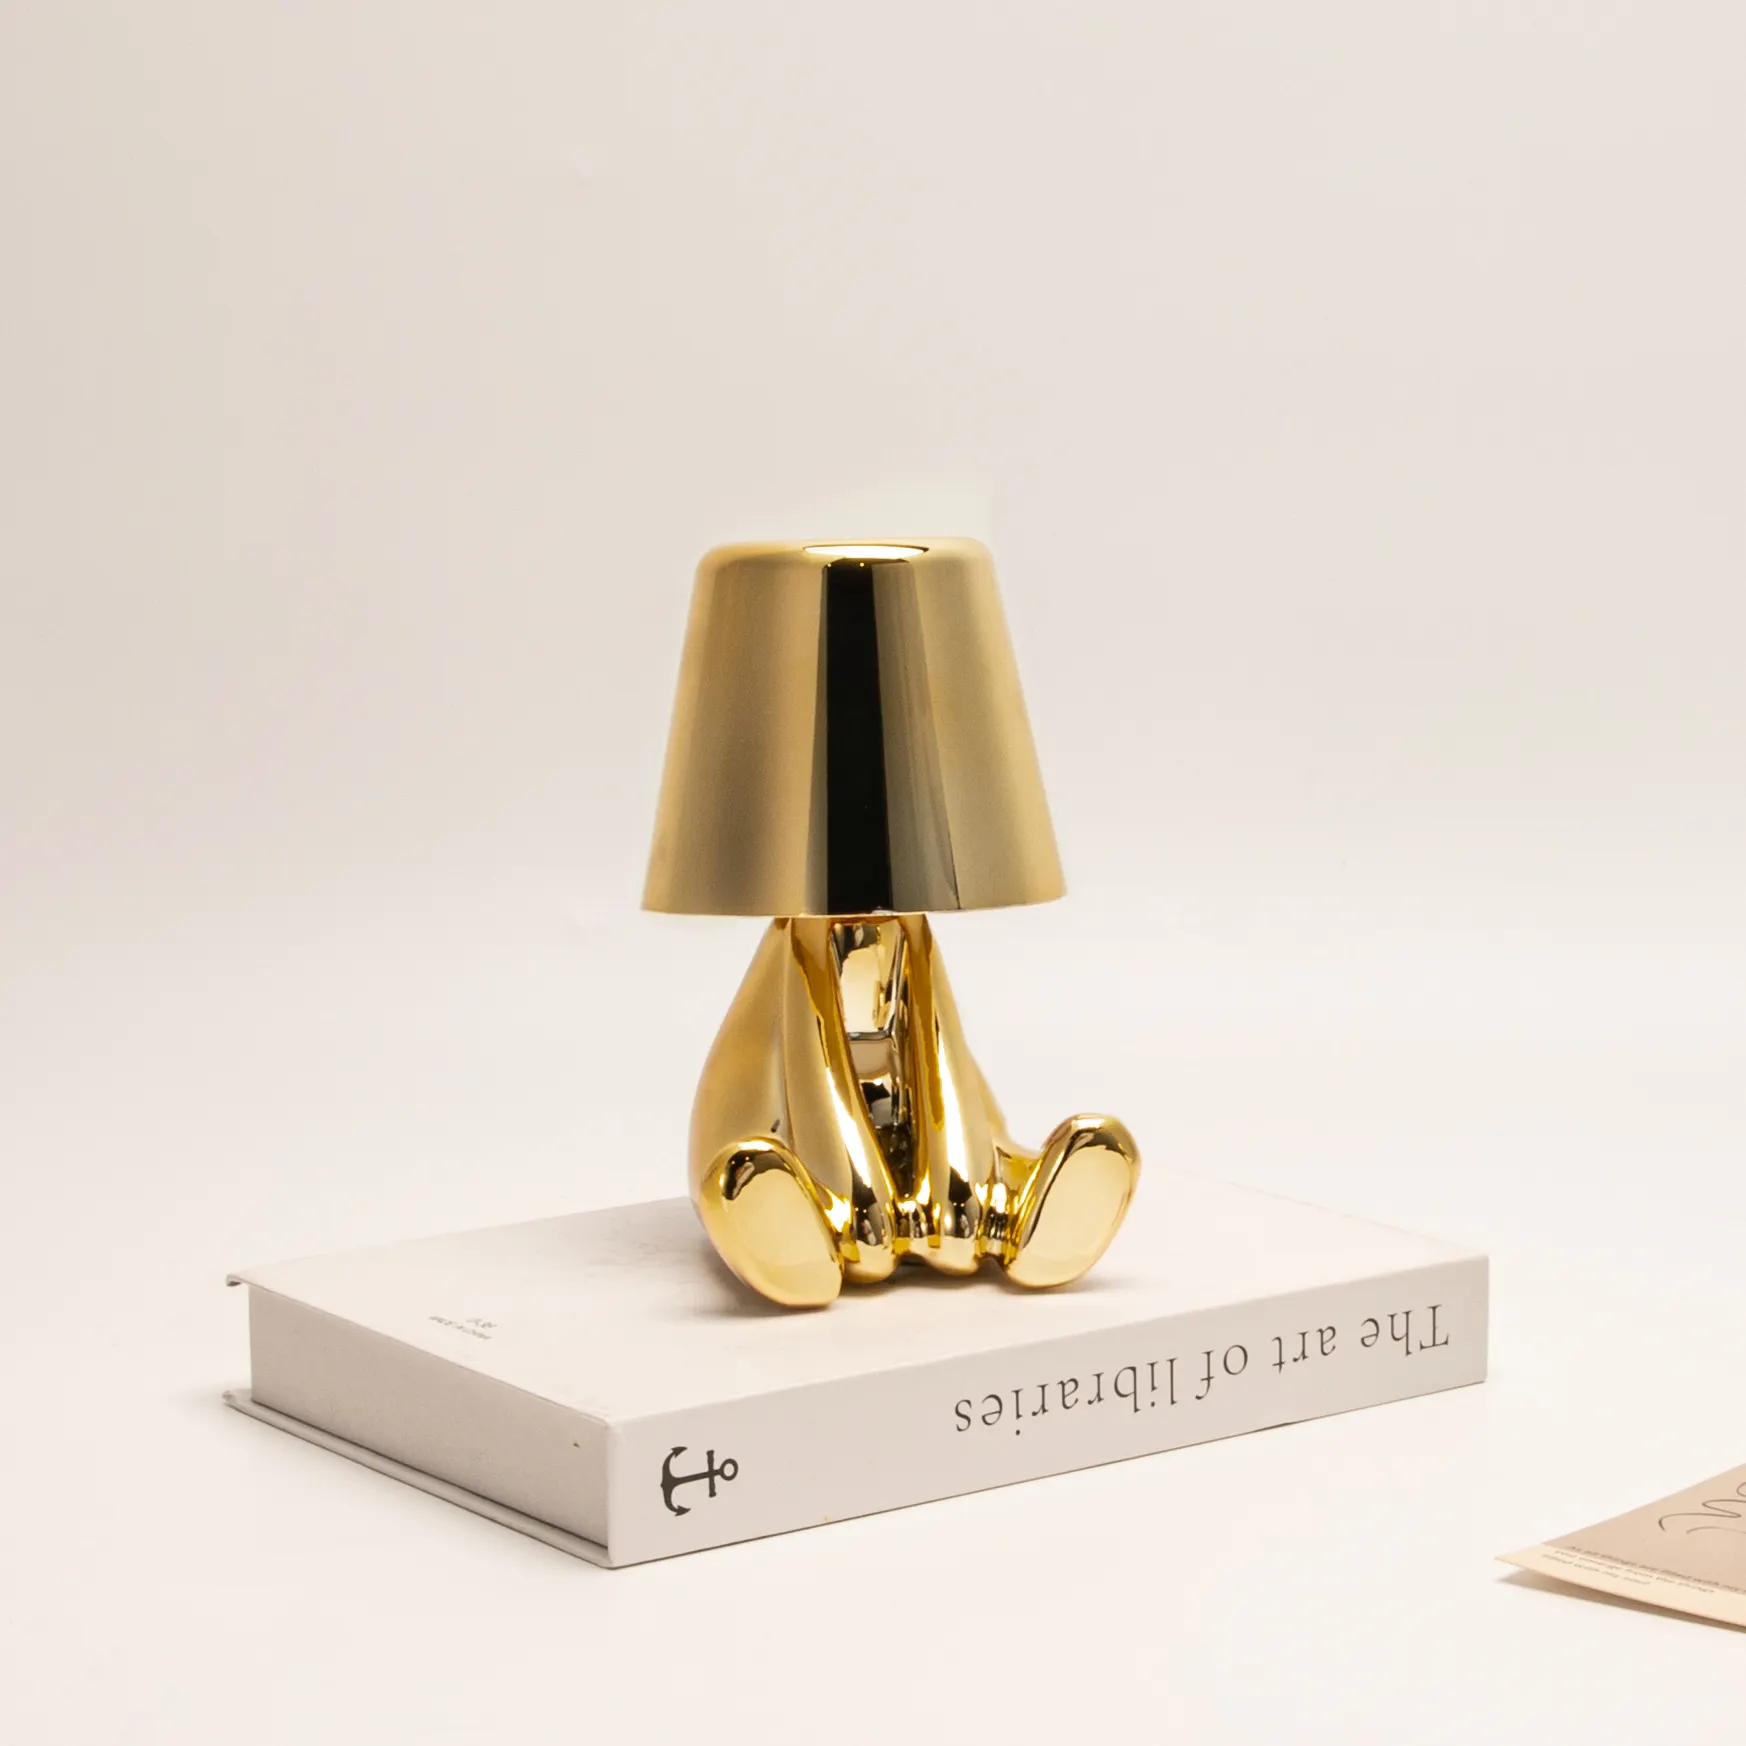 Tisch lampe für Hotel Nachttisch Wohnzimmer Little Man Night Light Lampe kreative Persönlichkeit Bar Kronleuchter Arbeits lampe